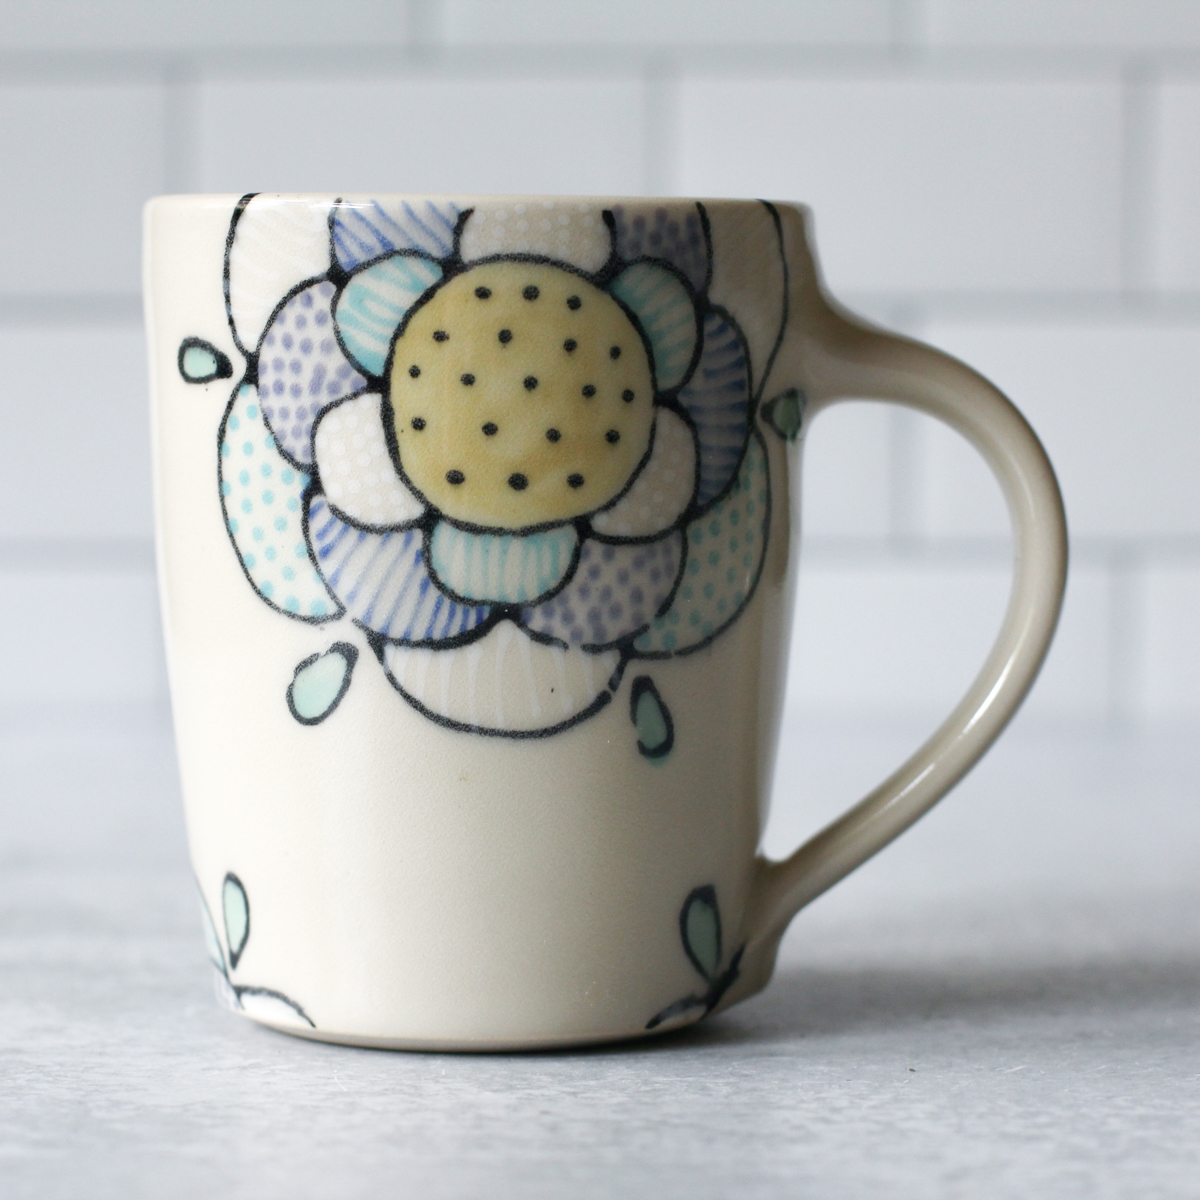 floral mug